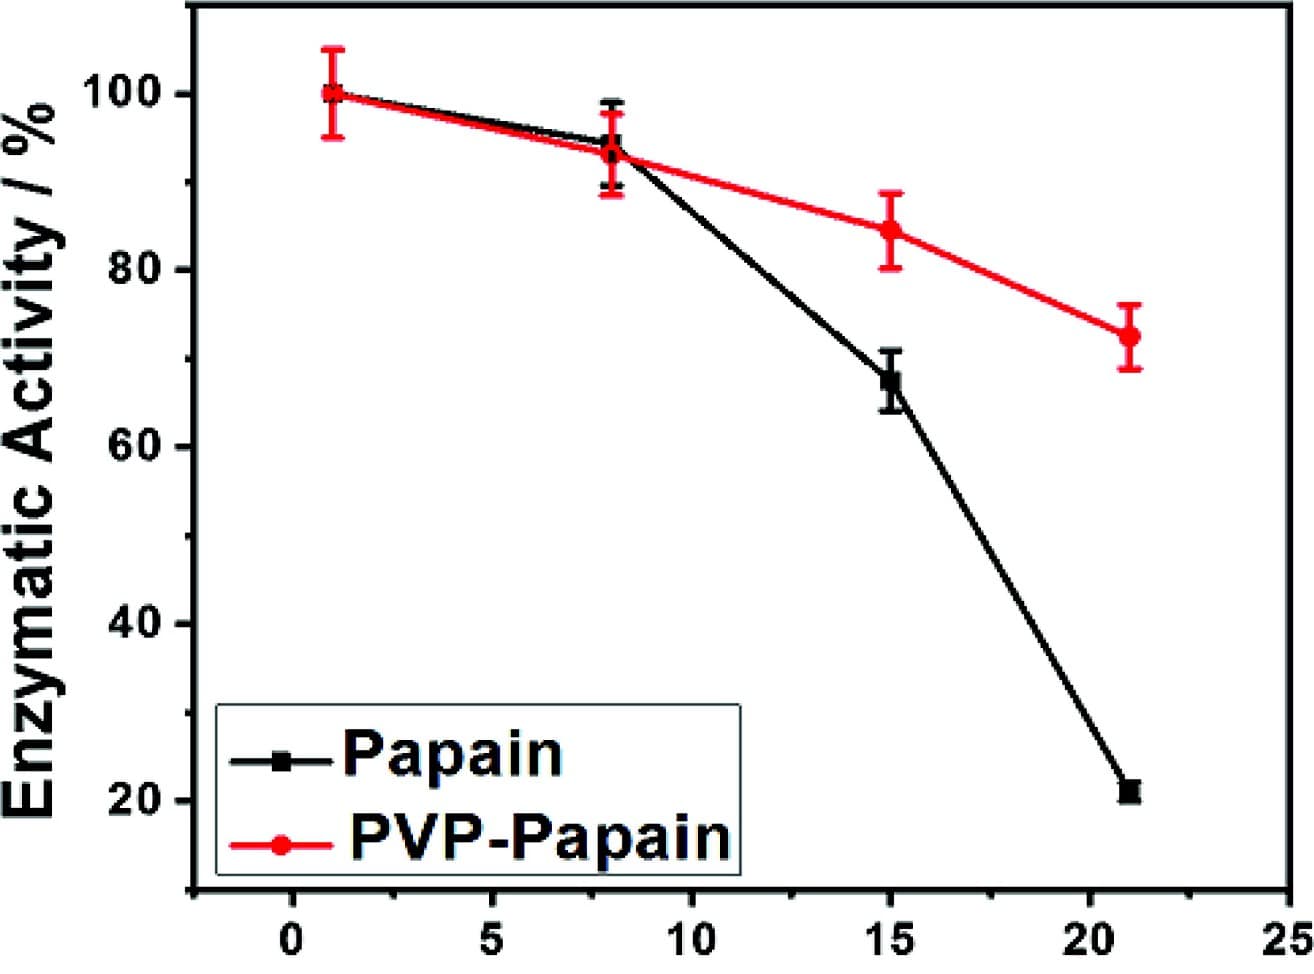 Phương pháp nào xác định được hoạt tính của papain trong các chế phẩm?